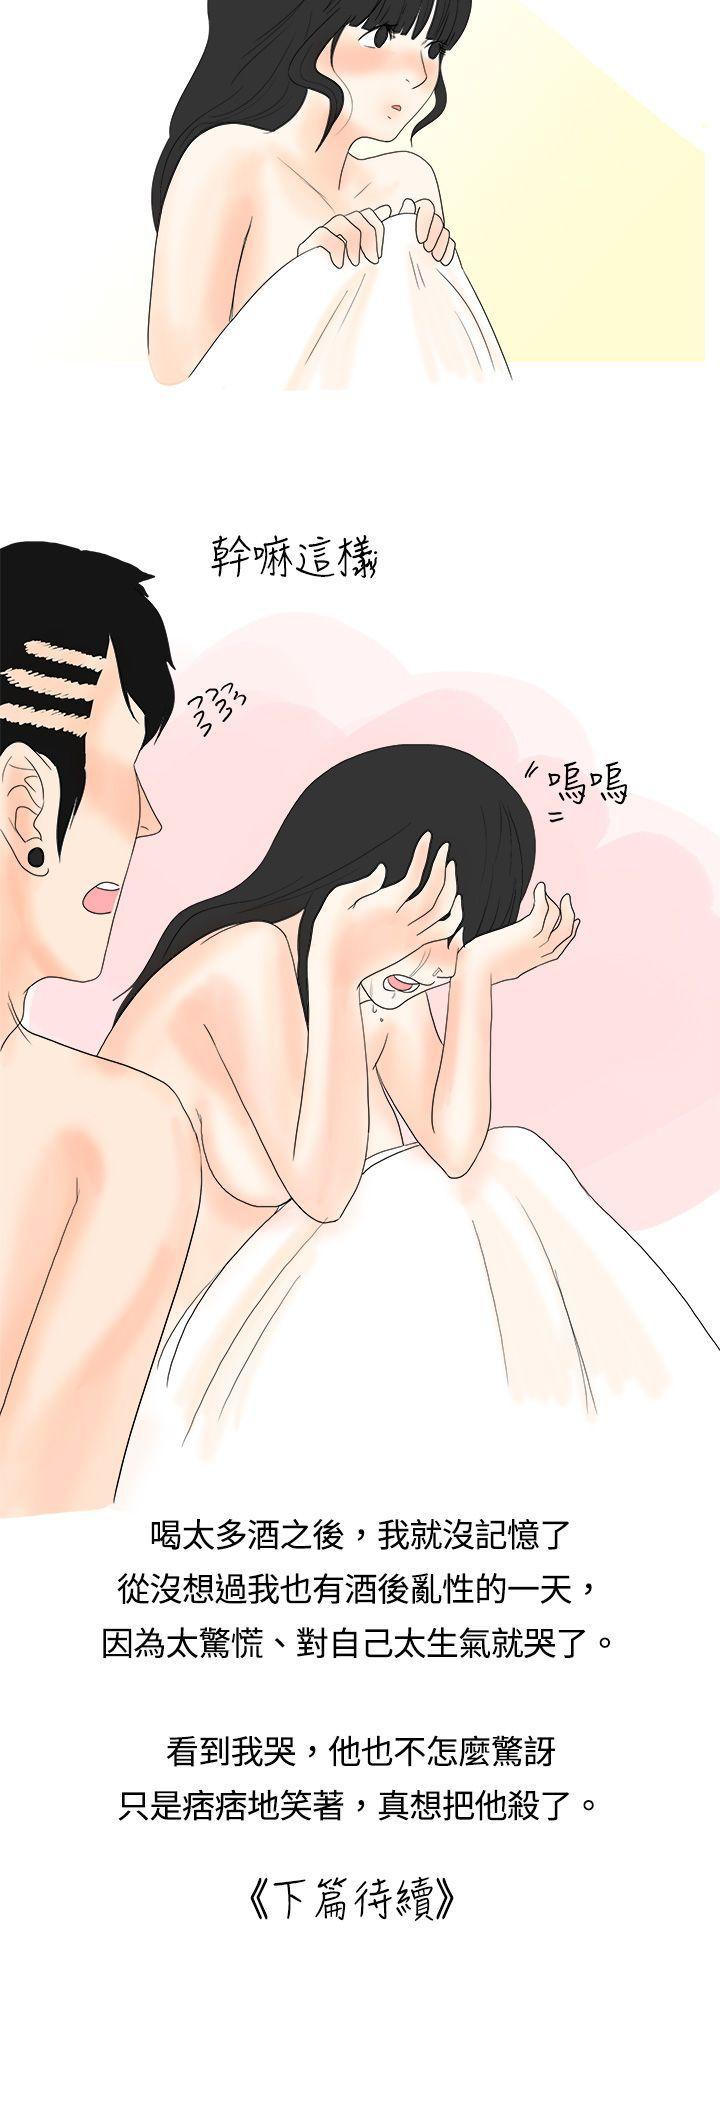 韩国污漫画 秘密Story 遇到史上最烂的无赖(上) 17